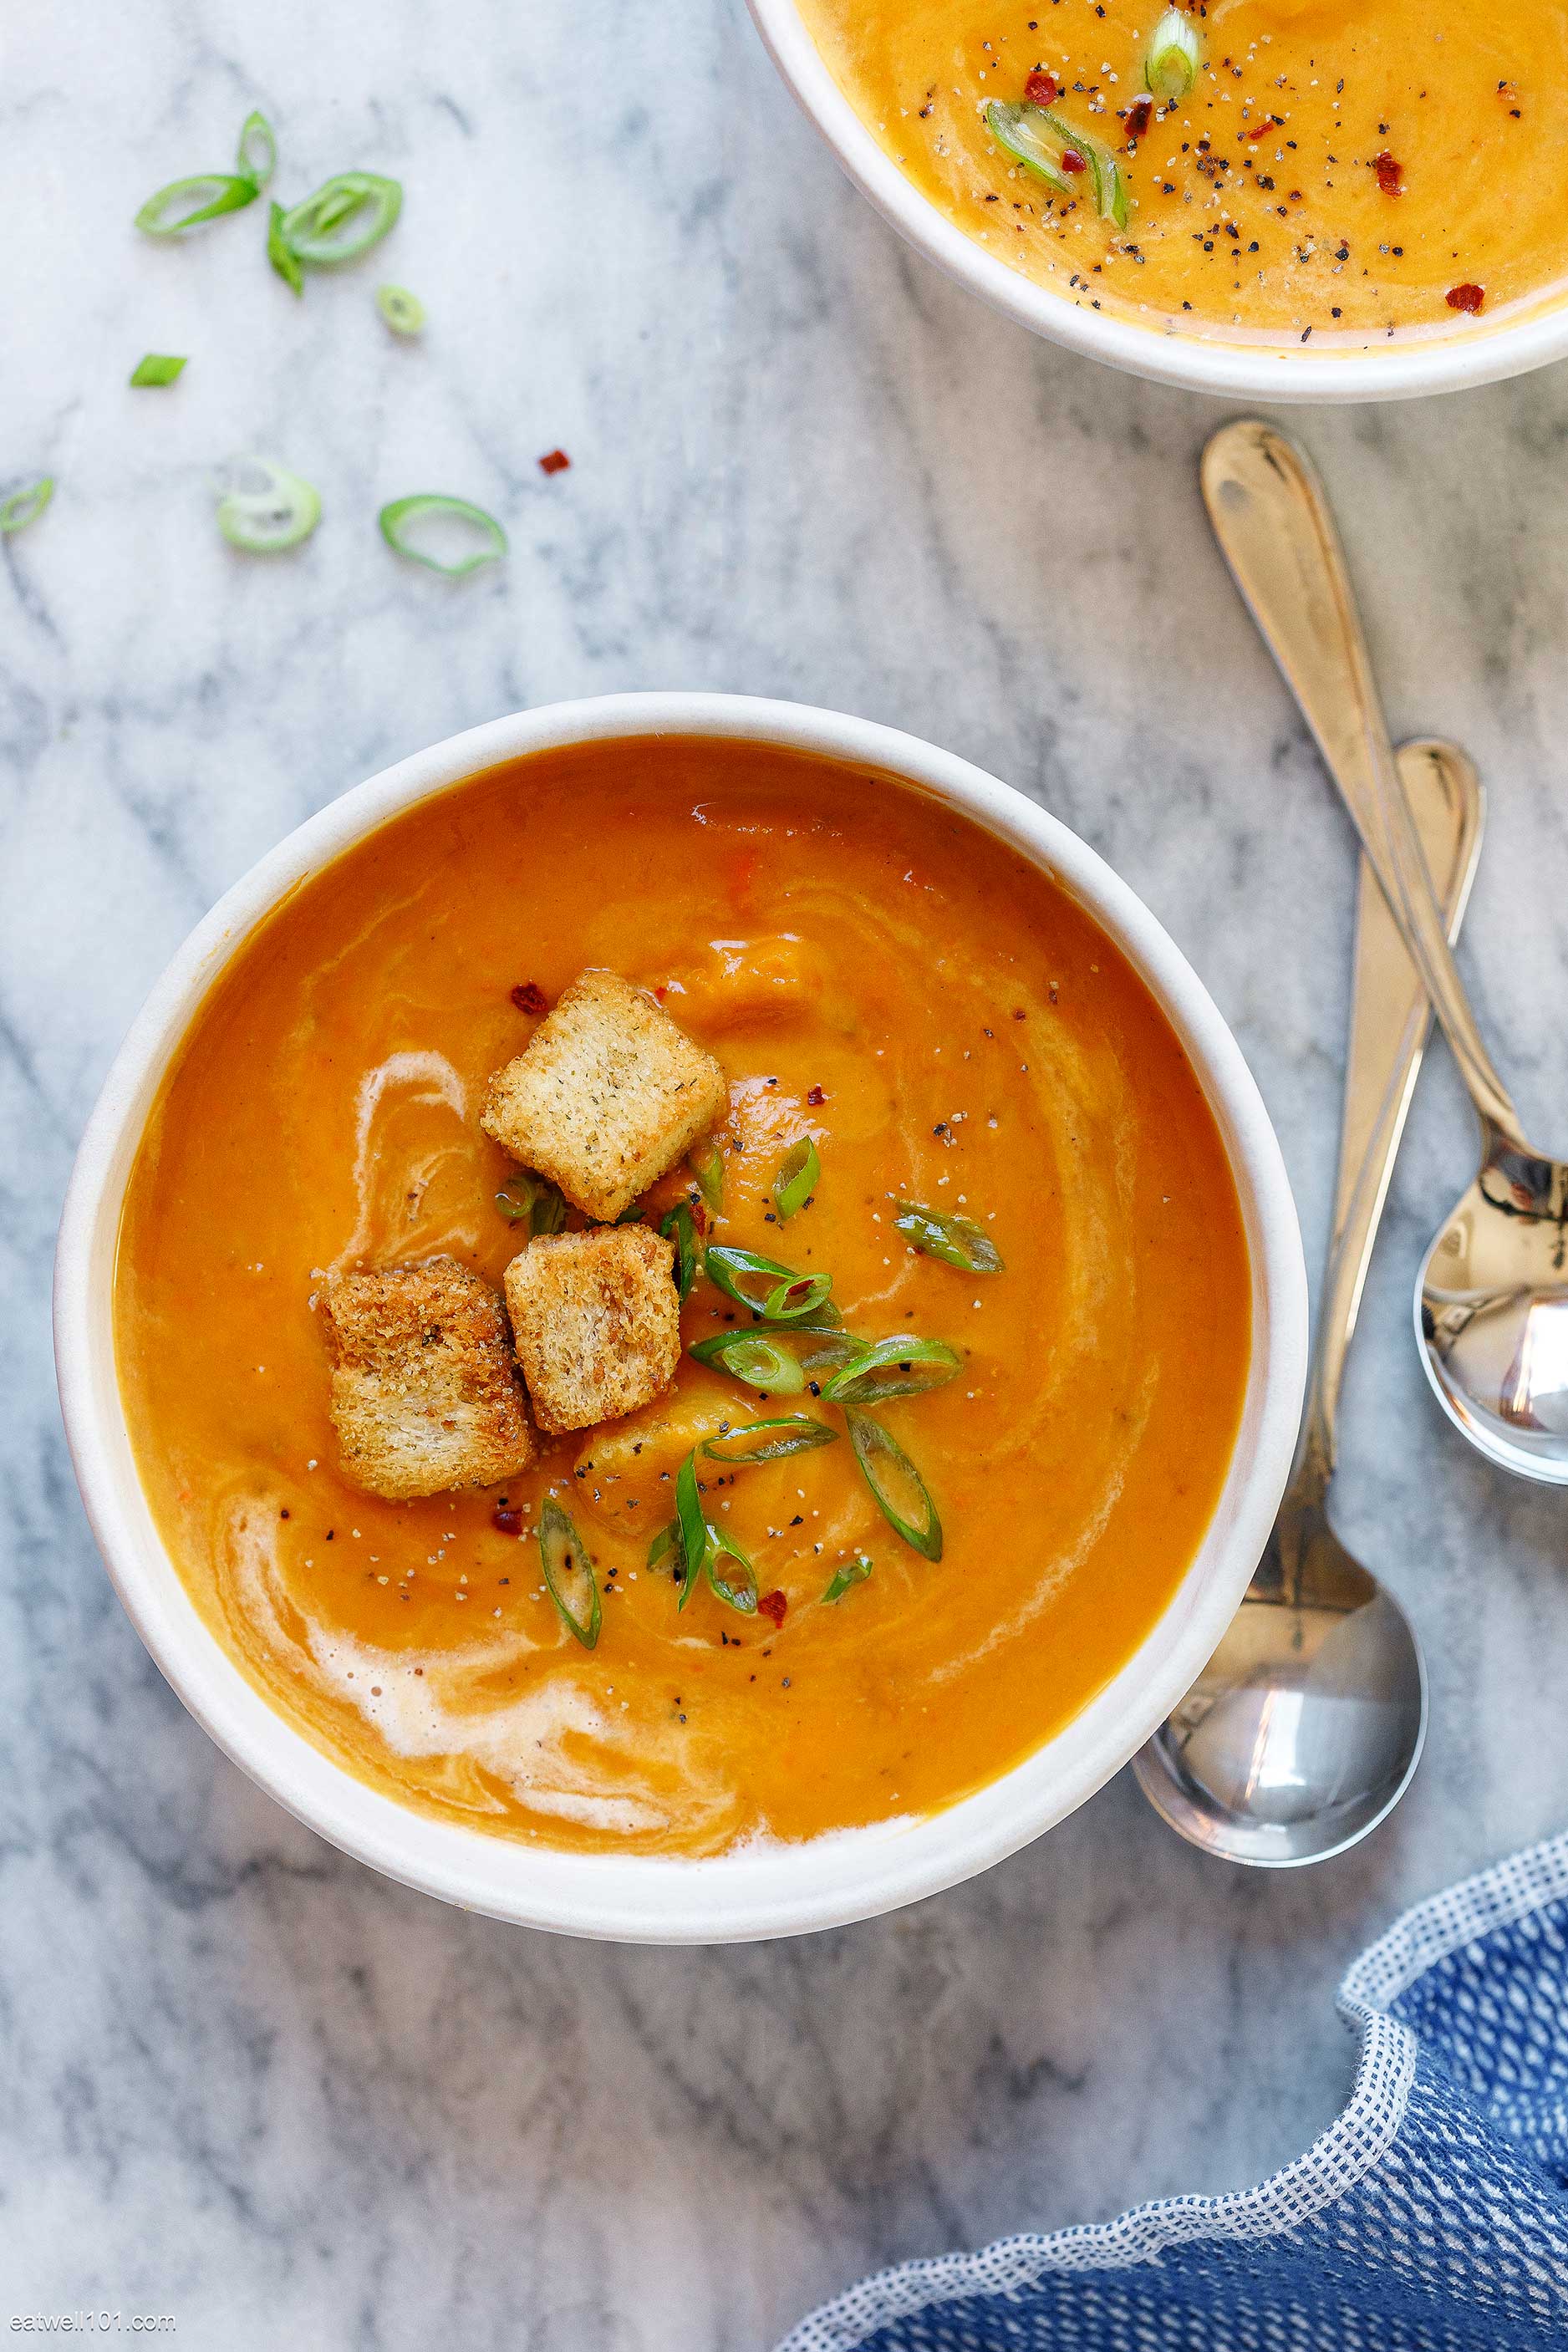 https://www.eatwell101.com/wp-content/uploads/2021/10/indian-pumpkin-curry-soup.jpg